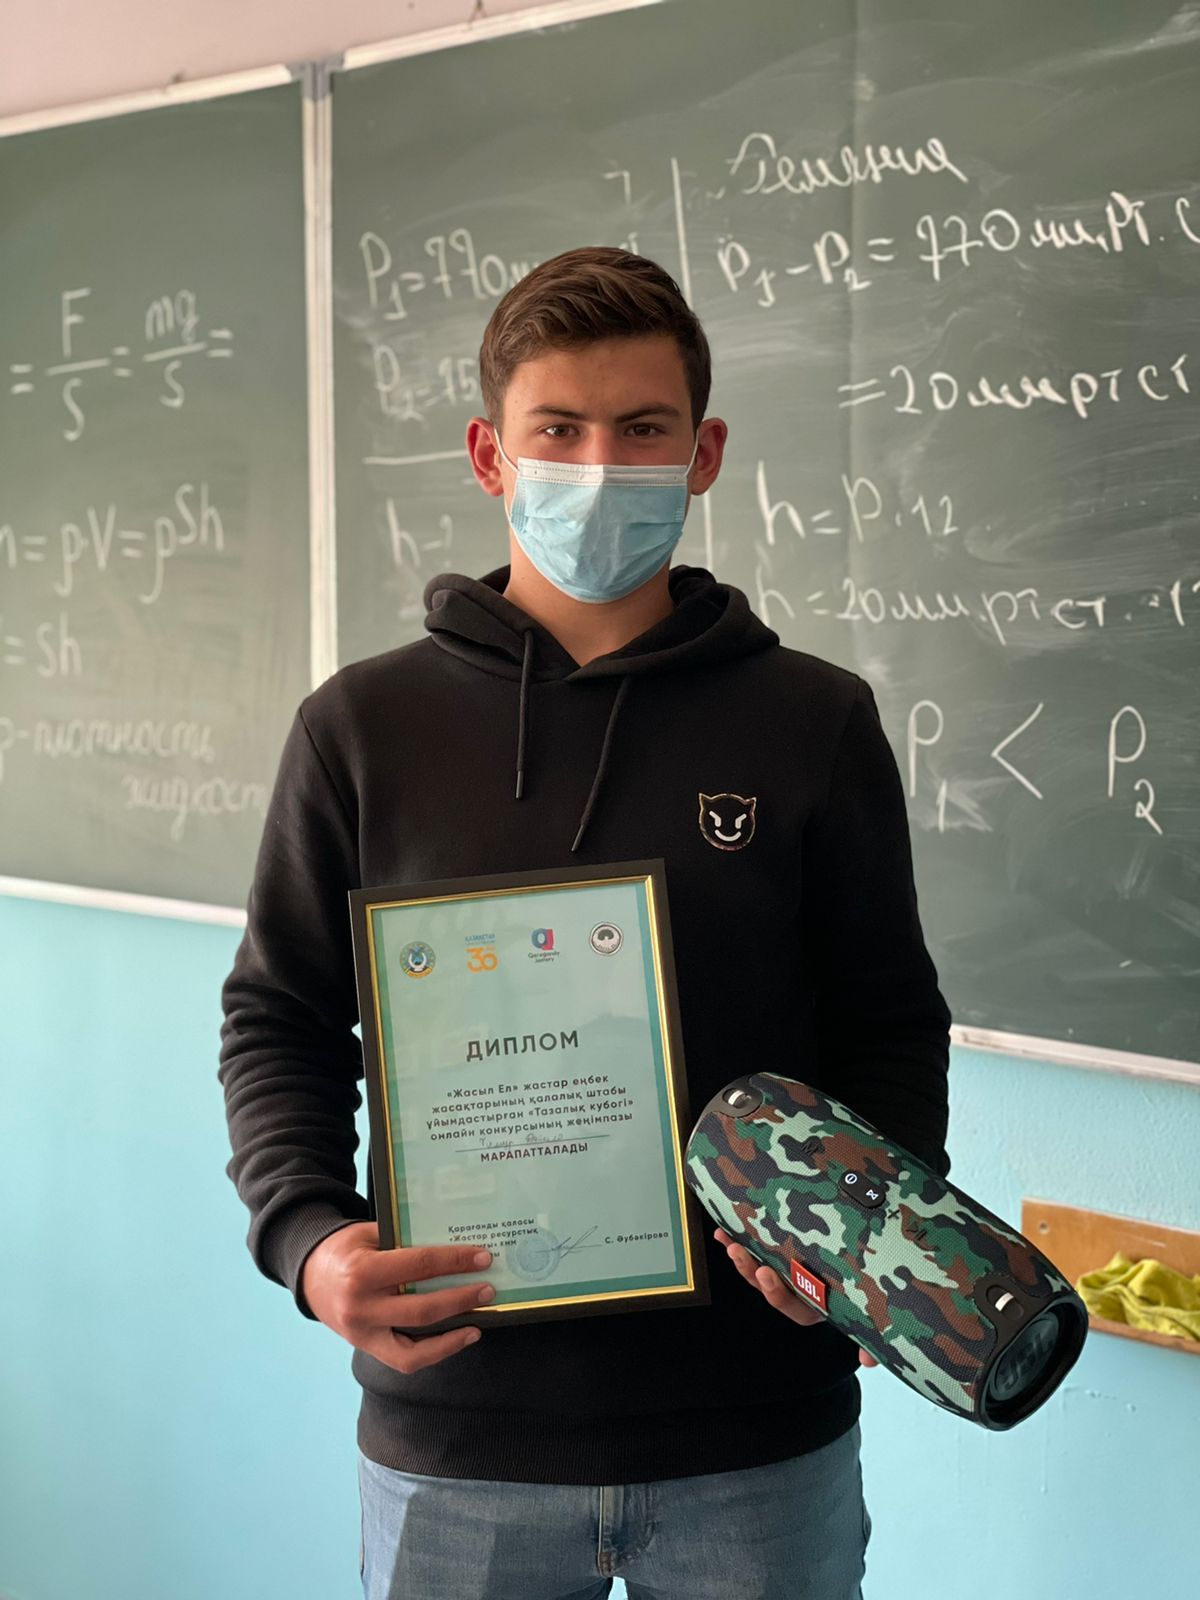 Участие в областном оналйн-конкурсе «Кубок чистоты», посвященному экологическим проблемам Карагандинской области.